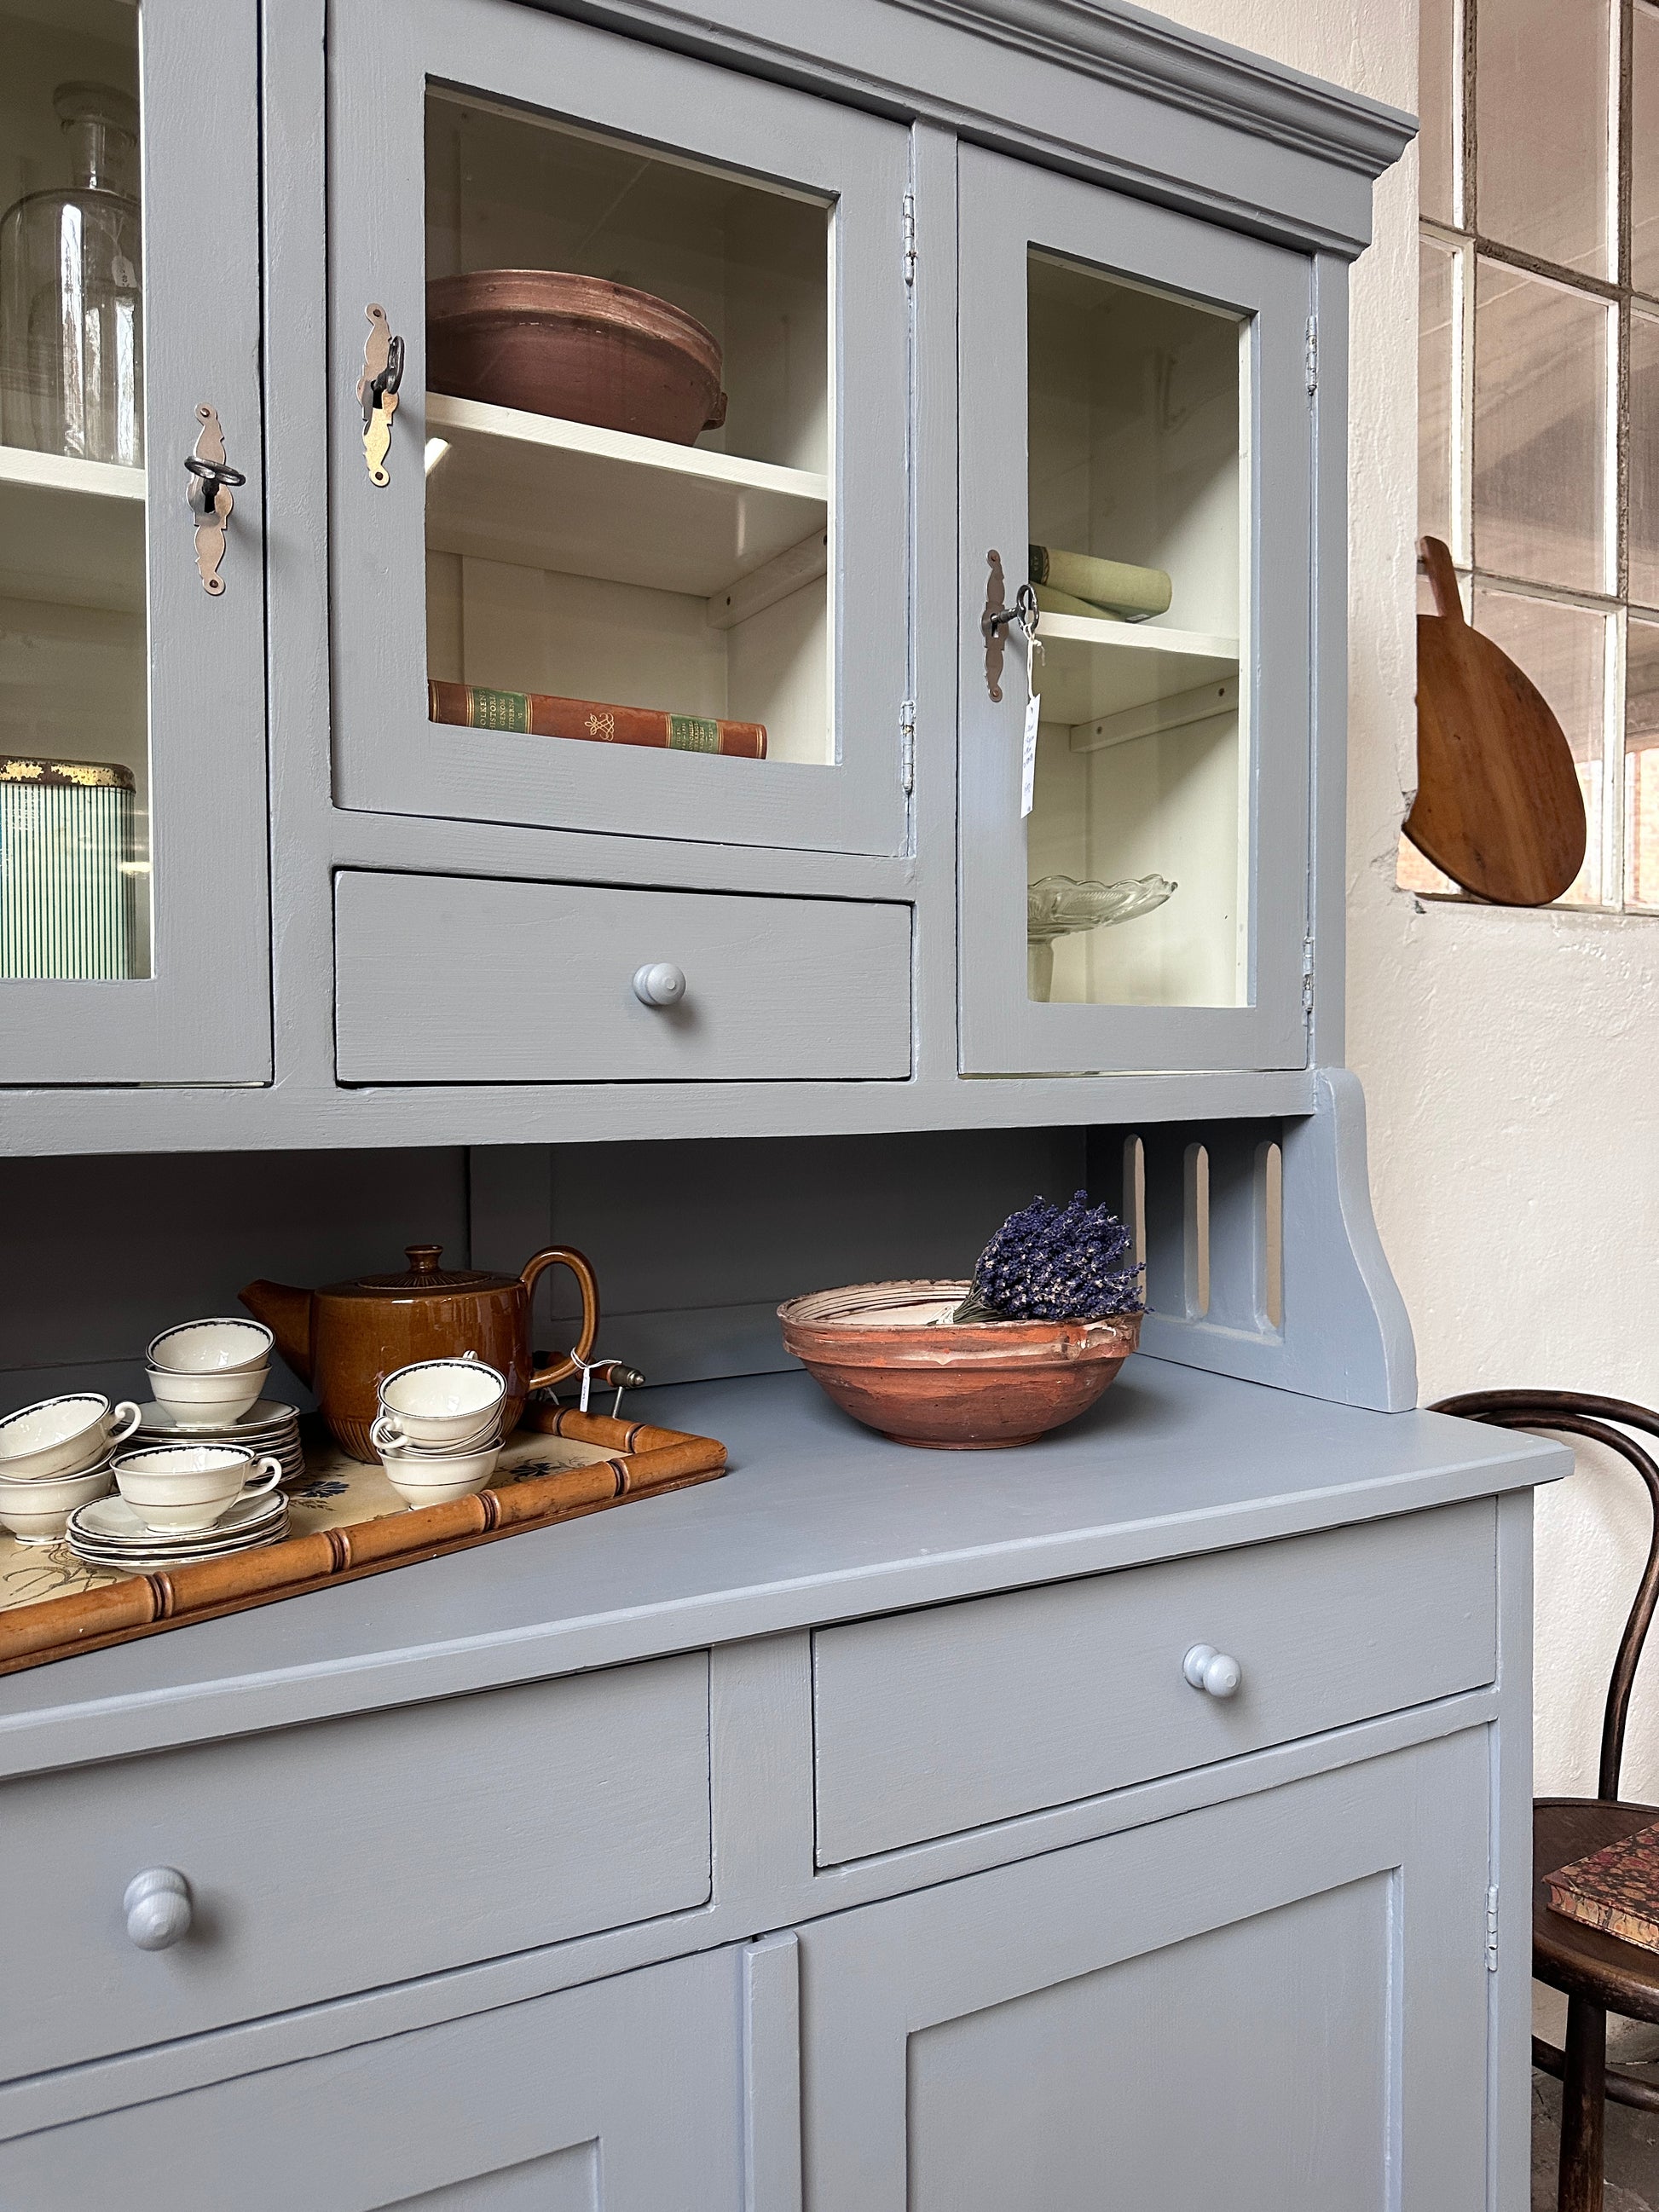 Bild visar ett gråblått köksskåp med vitrinluckor samt täckta luckor och lådor. Bild visar närbild på avställningsyta.